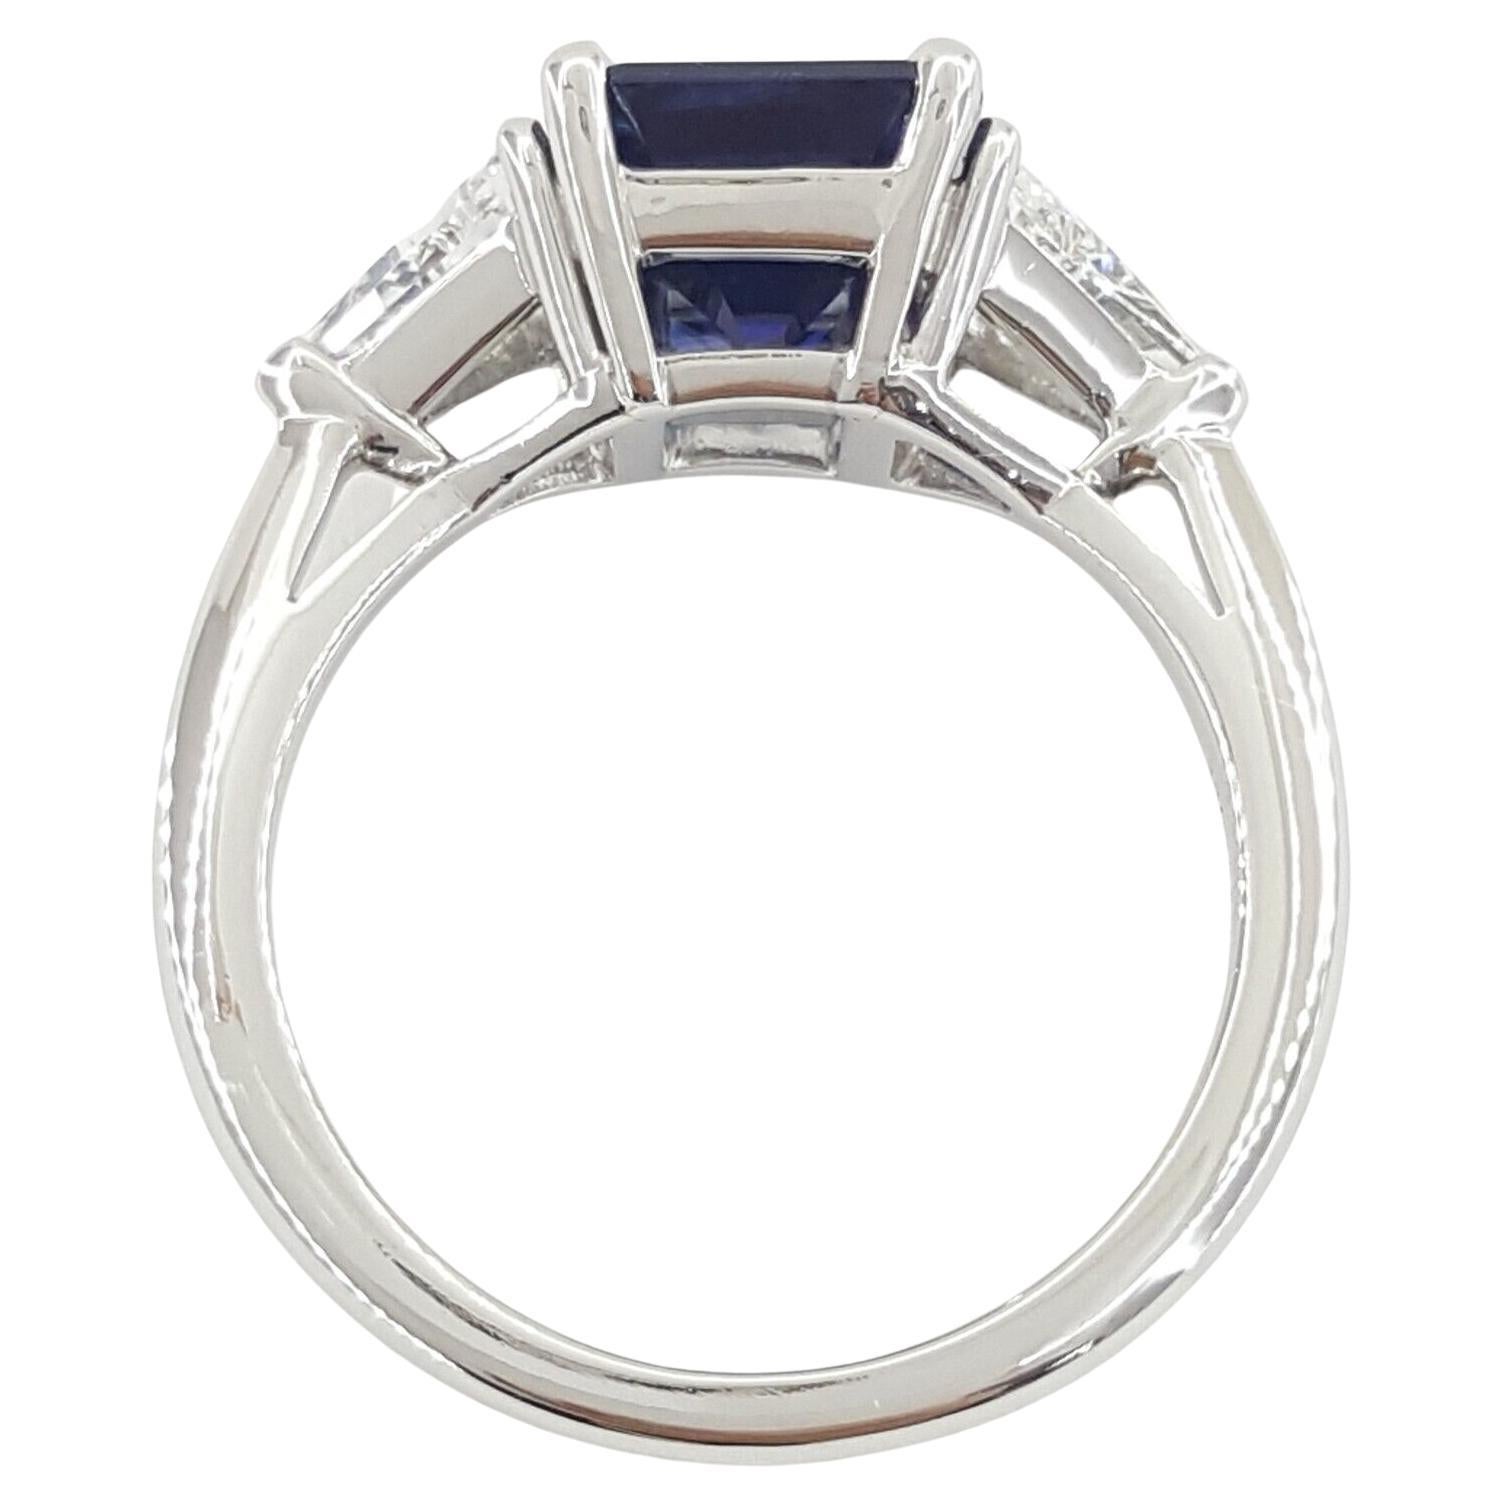 Tiffany & Co. 3,5 ct Gesamtgewicht 3-Stein Smaragd Schliff Saphir & Trillion Brilliant Cut Diamond Verlobungsring in Platin.



Der Ring wiegt 5,3 Gramm, Größe 4,5, der Mittelstein ist ein Natural 2,85 ct Emerald Cut Vivid Blue Color.

Es gibt 2